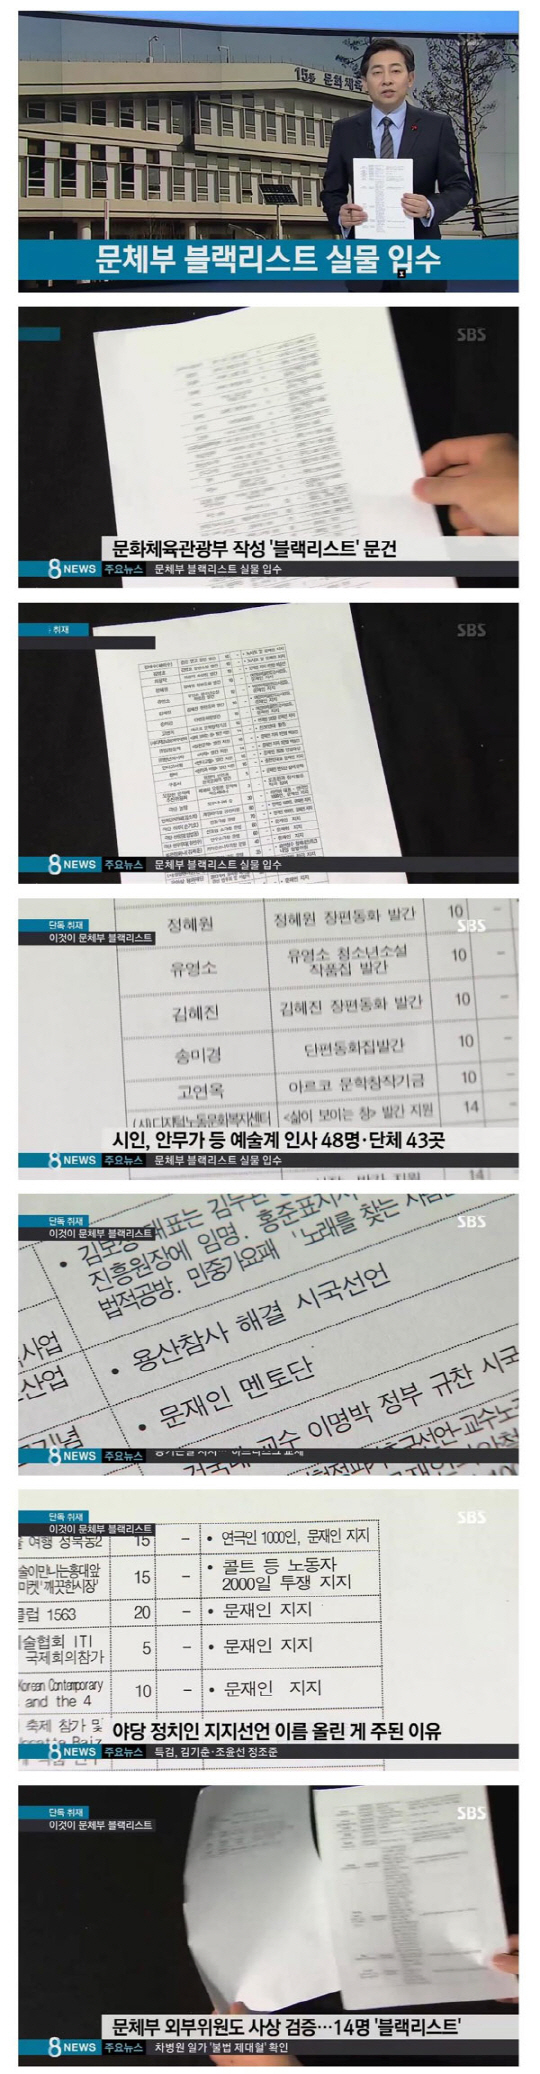 지난 26일 SBS 8시 뉴스에서 문제부 블랙리스트 문건을 입수해 보도했다./사진=SBS 8시뉴스 캡처